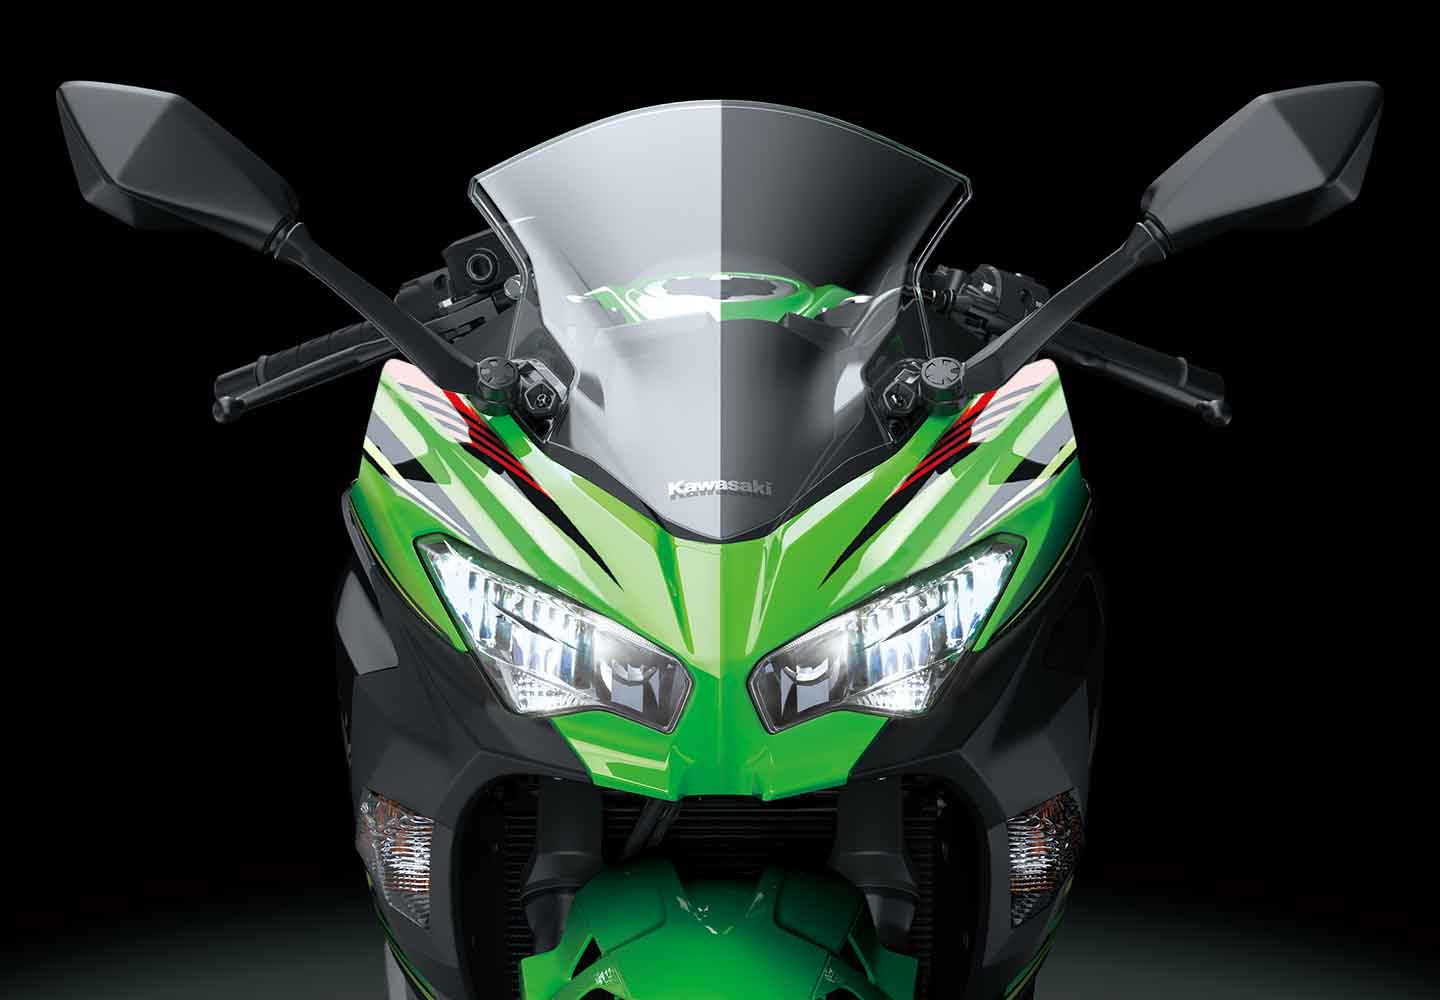 2018 Kawasaki Ninja 400ABS Review • Total Motorcycle